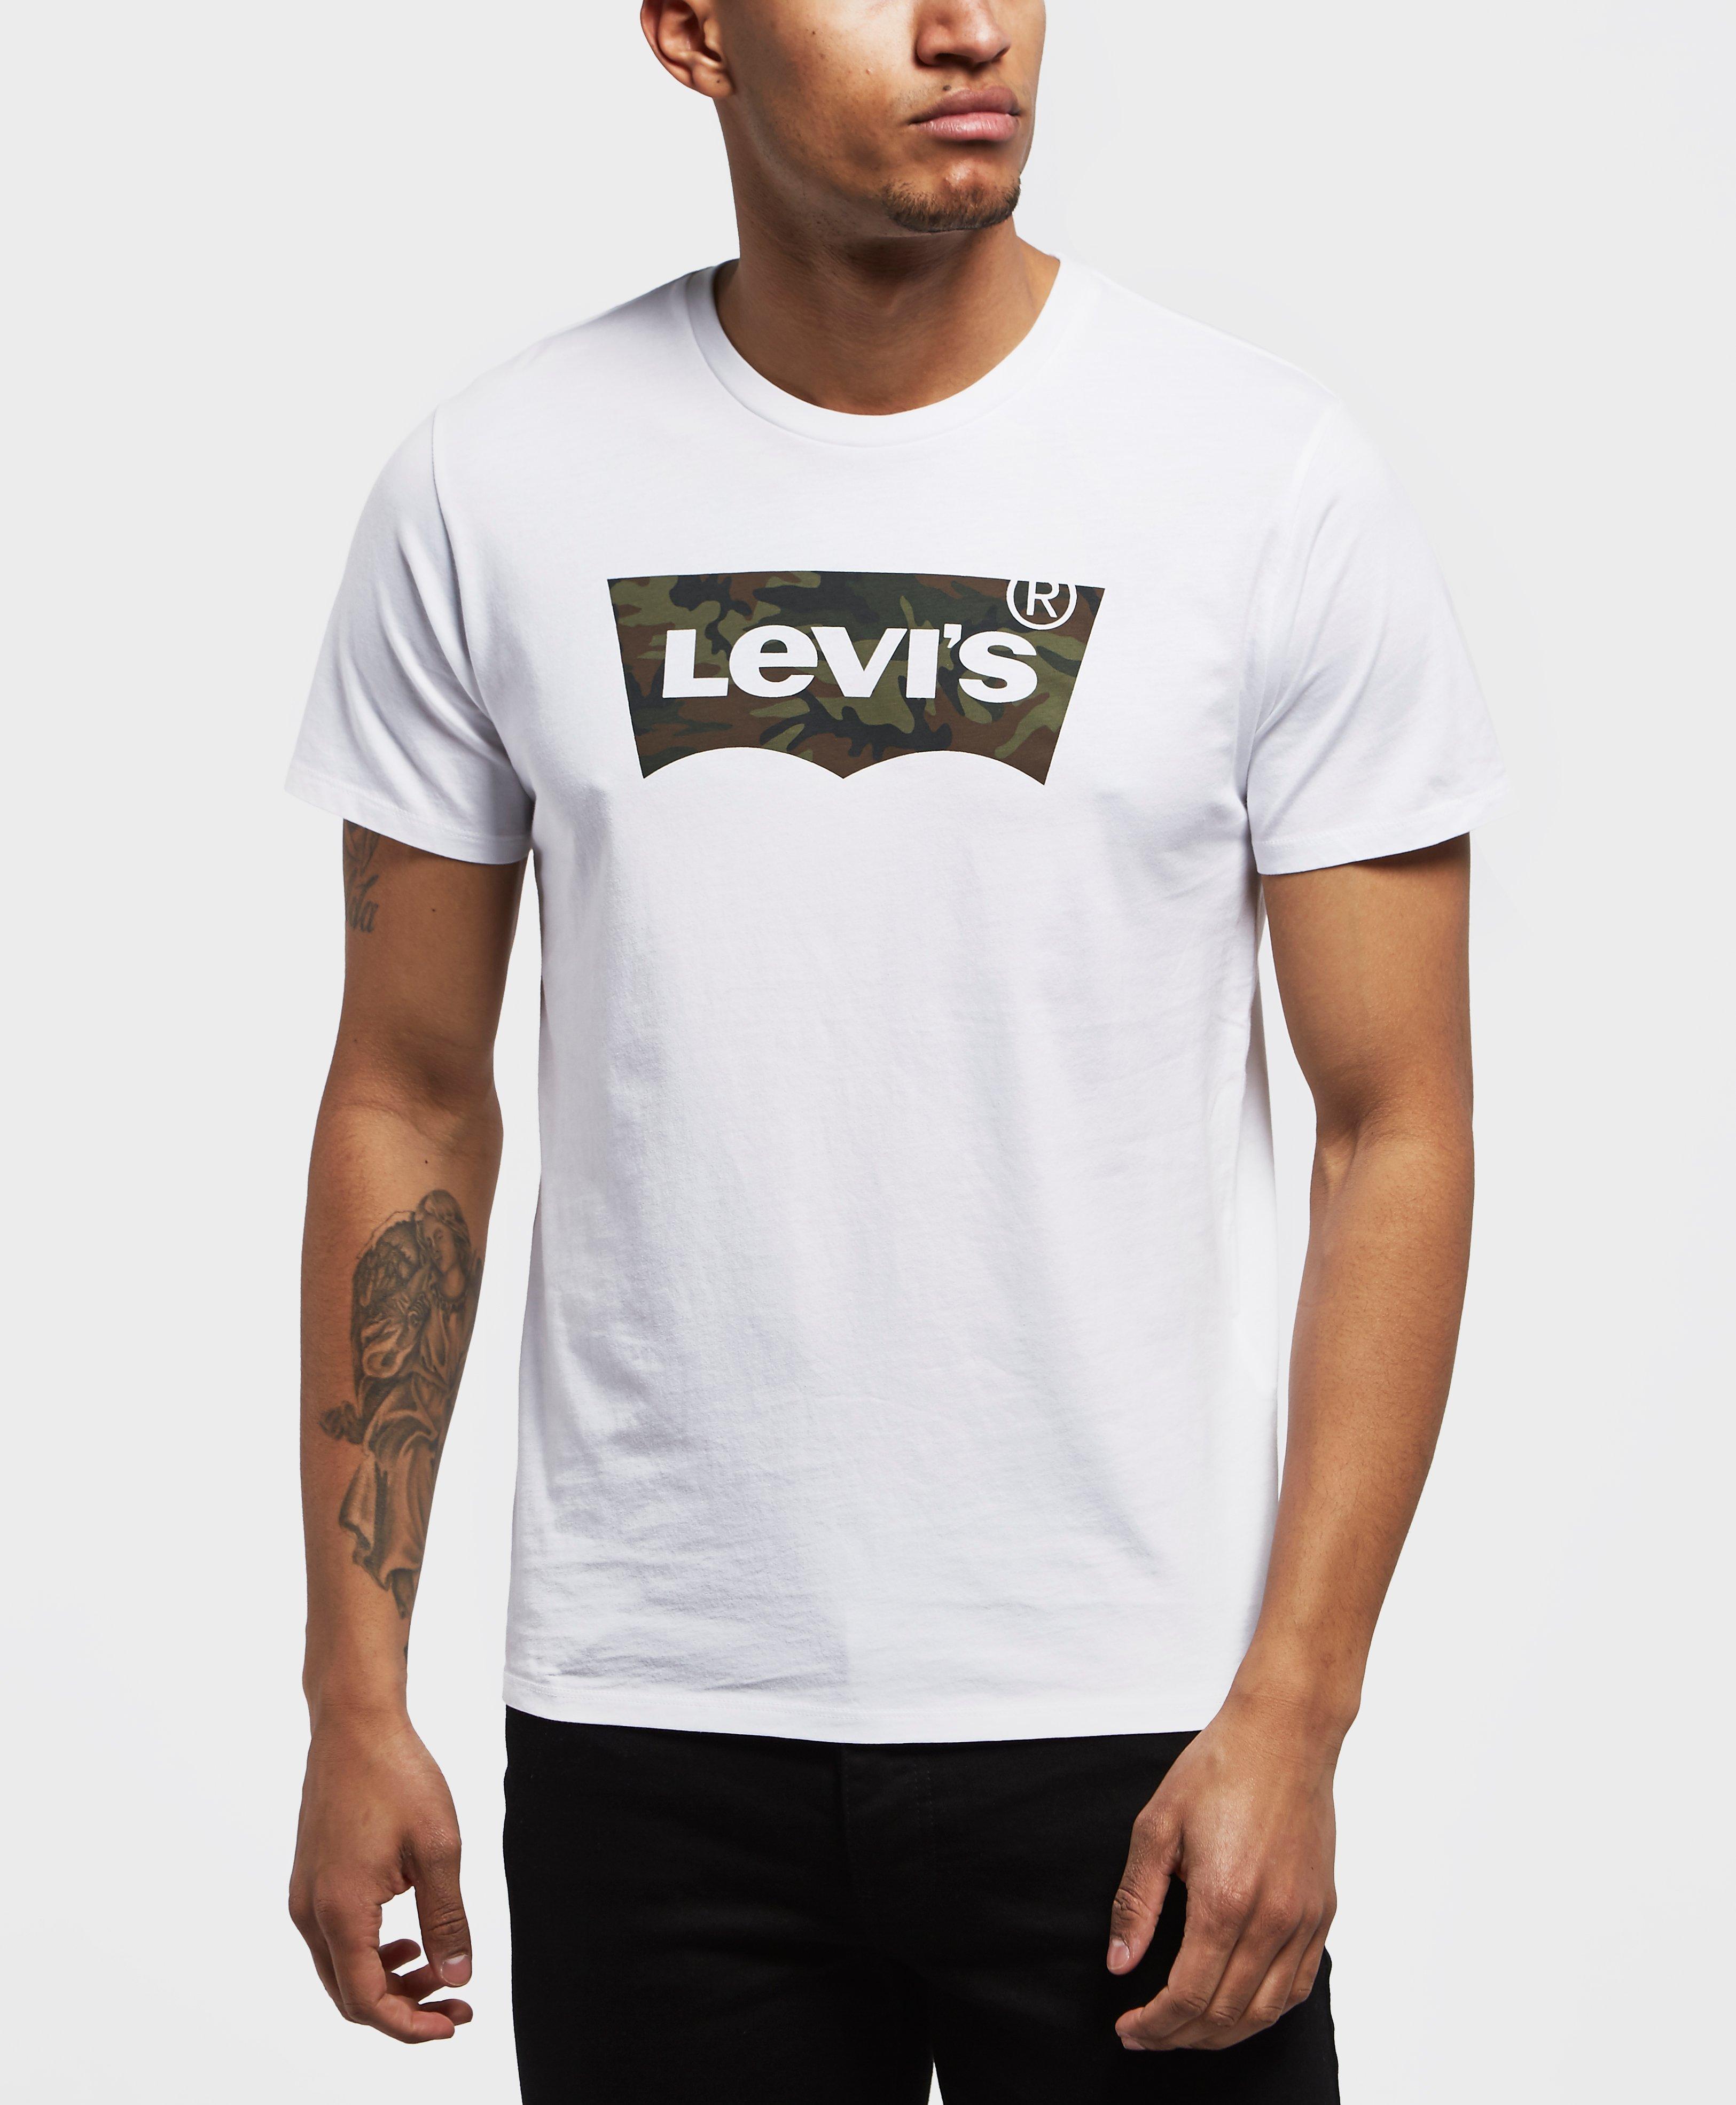 Levis Camo Batwing Short Sleeve T-shirt 